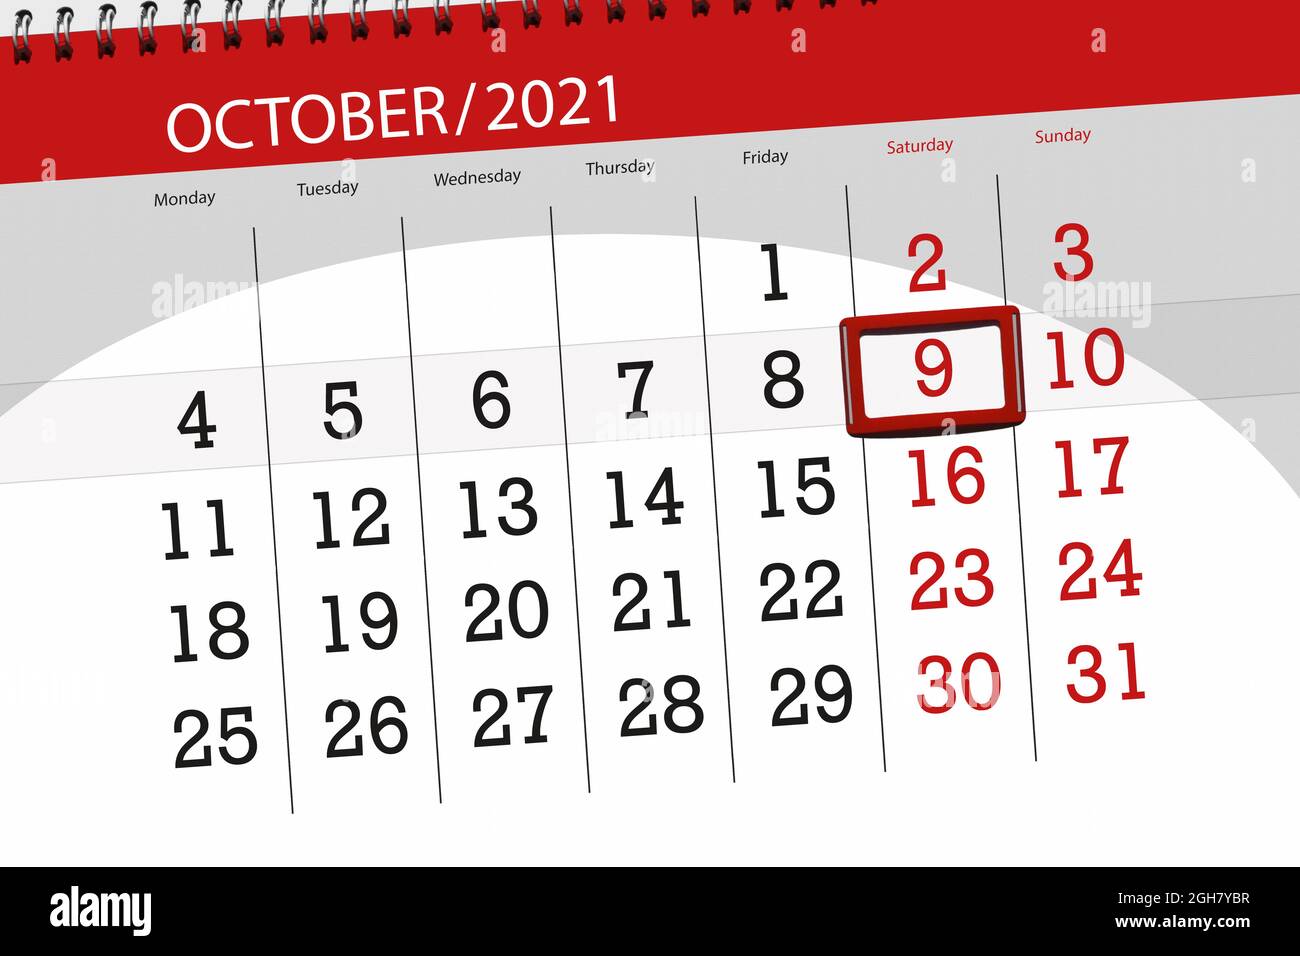 Calendrier du mois octobre 2021, date limite, 9, samedi. Banque D'Images